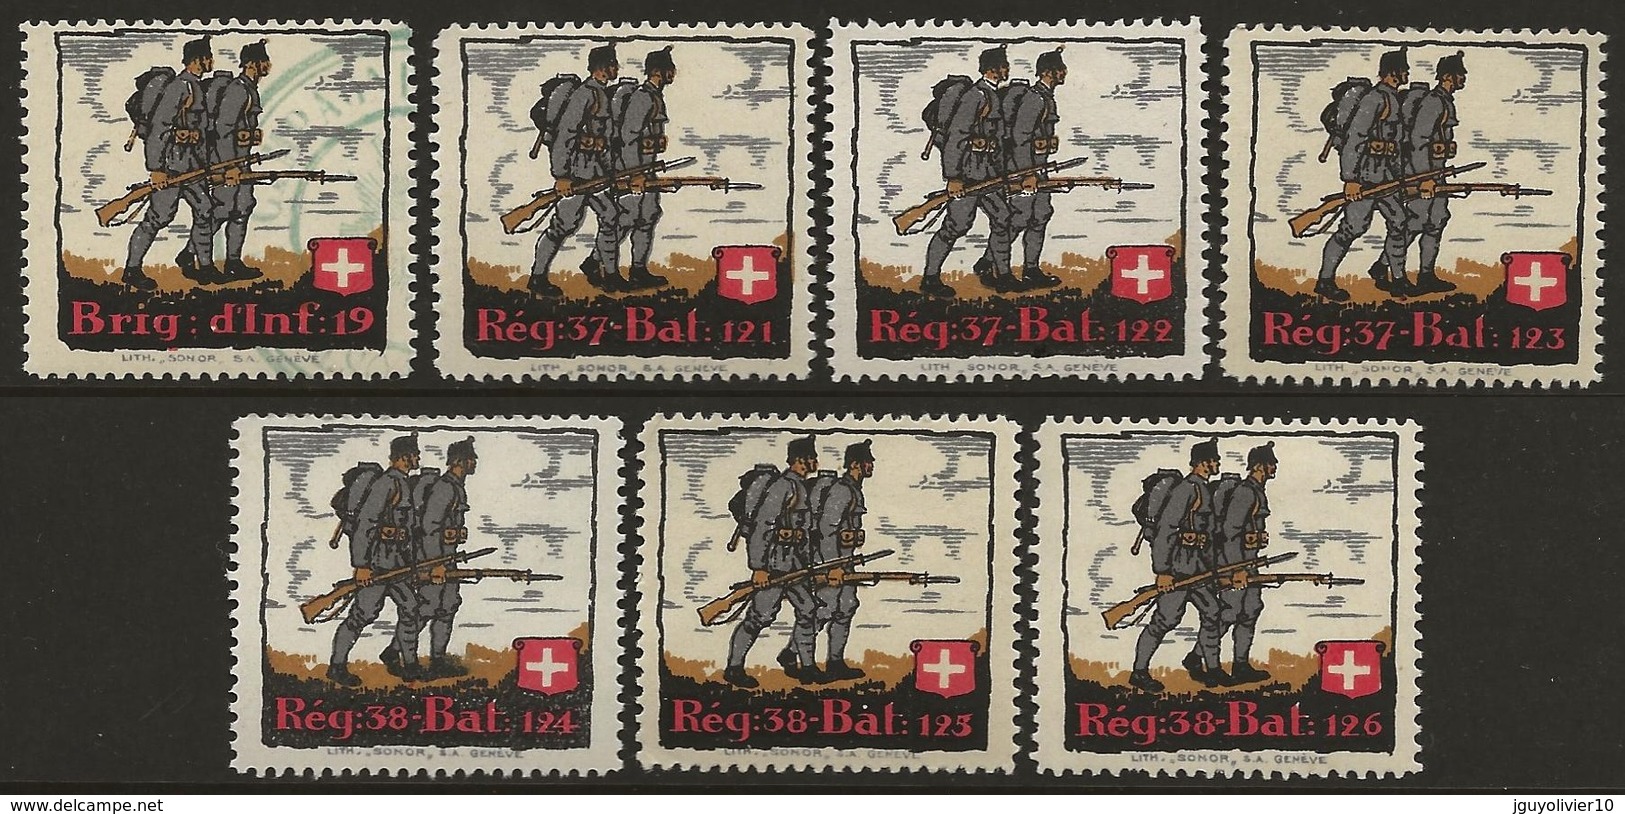 Suisse WWI Vignette Militaire Soldatenmarken LANDWEHR 1914-18 Fine H (except 1st Stamp Used) - Vignettes